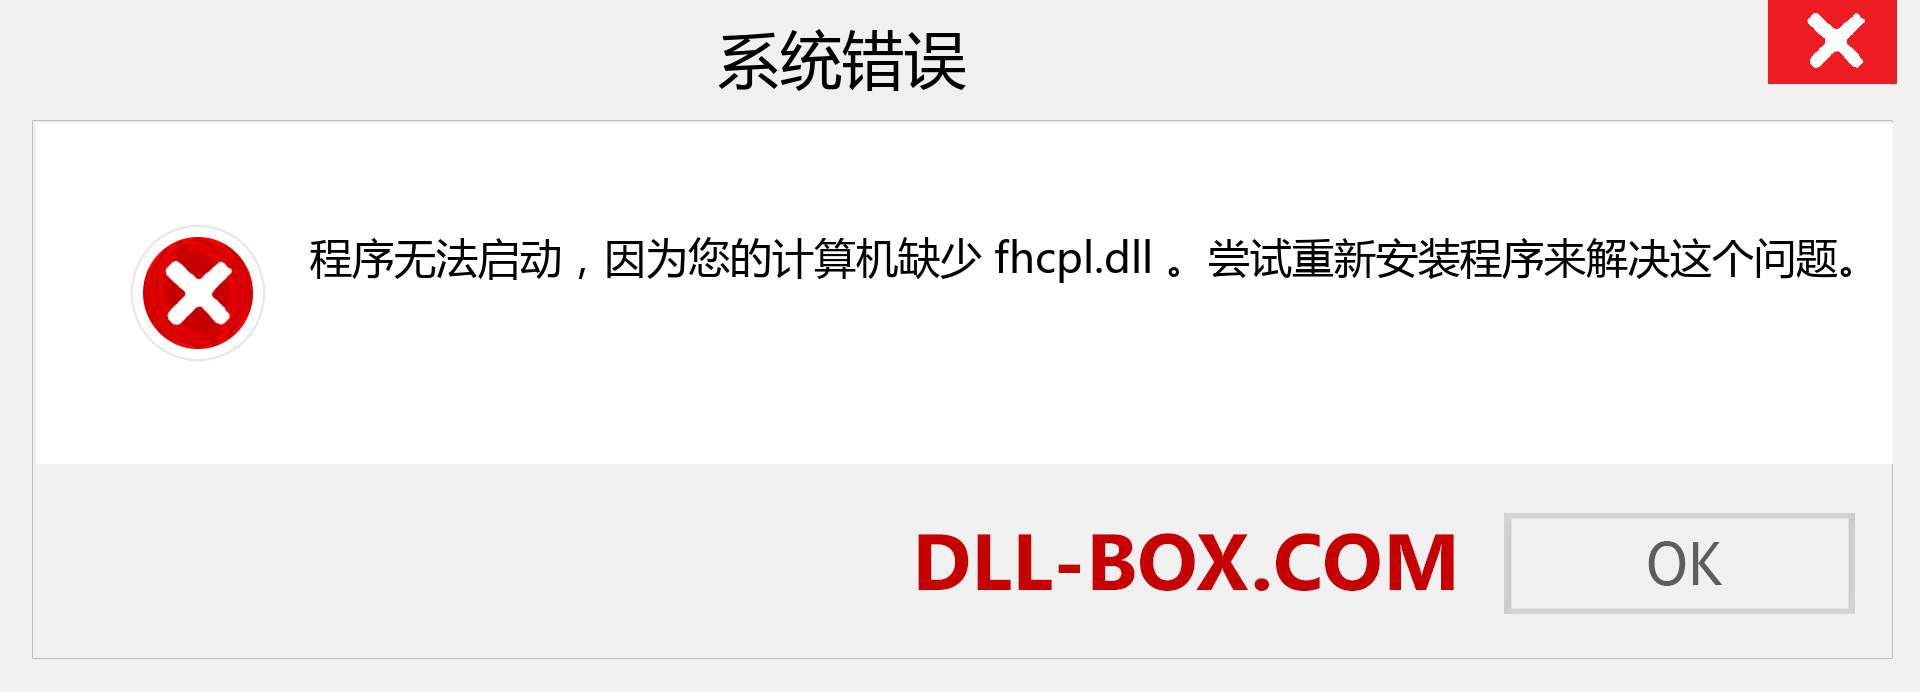 fhcpl.dll 文件丢失？。 适用于 Windows 7、8、10 的下载 - 修复 Windows、照片、图像上的 fhcpl dll 丢失错误